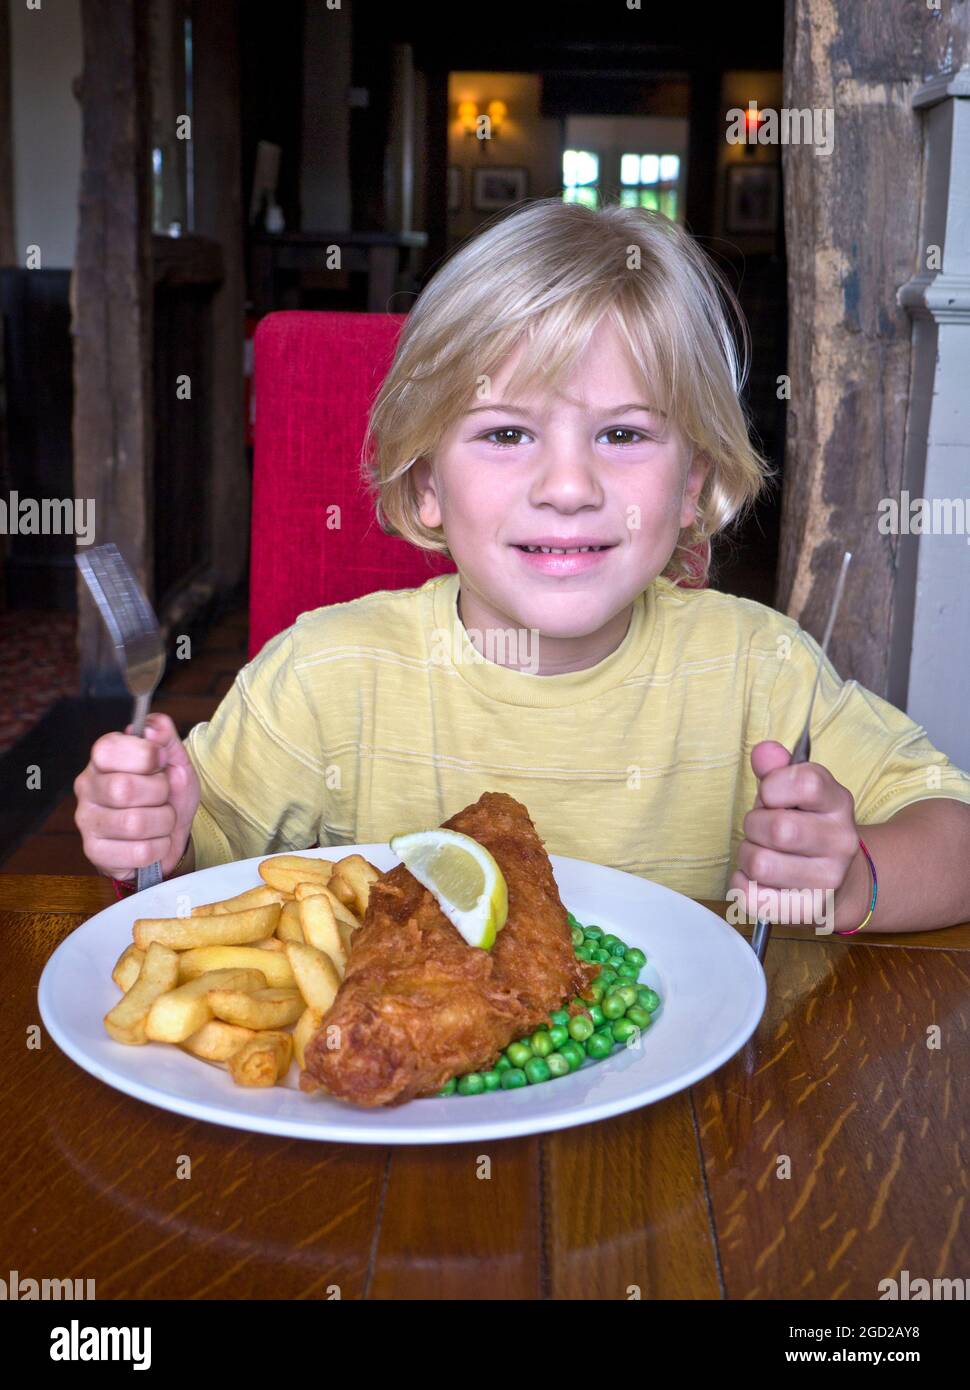 Niño de 6-8 años rubio en el interior del restaurante preparándose para comer un plato grande de pescado tradicional y patatas fritas con guisantes. Sujetar la cuchilla y la horquilla en una posición lista. Foto de stock